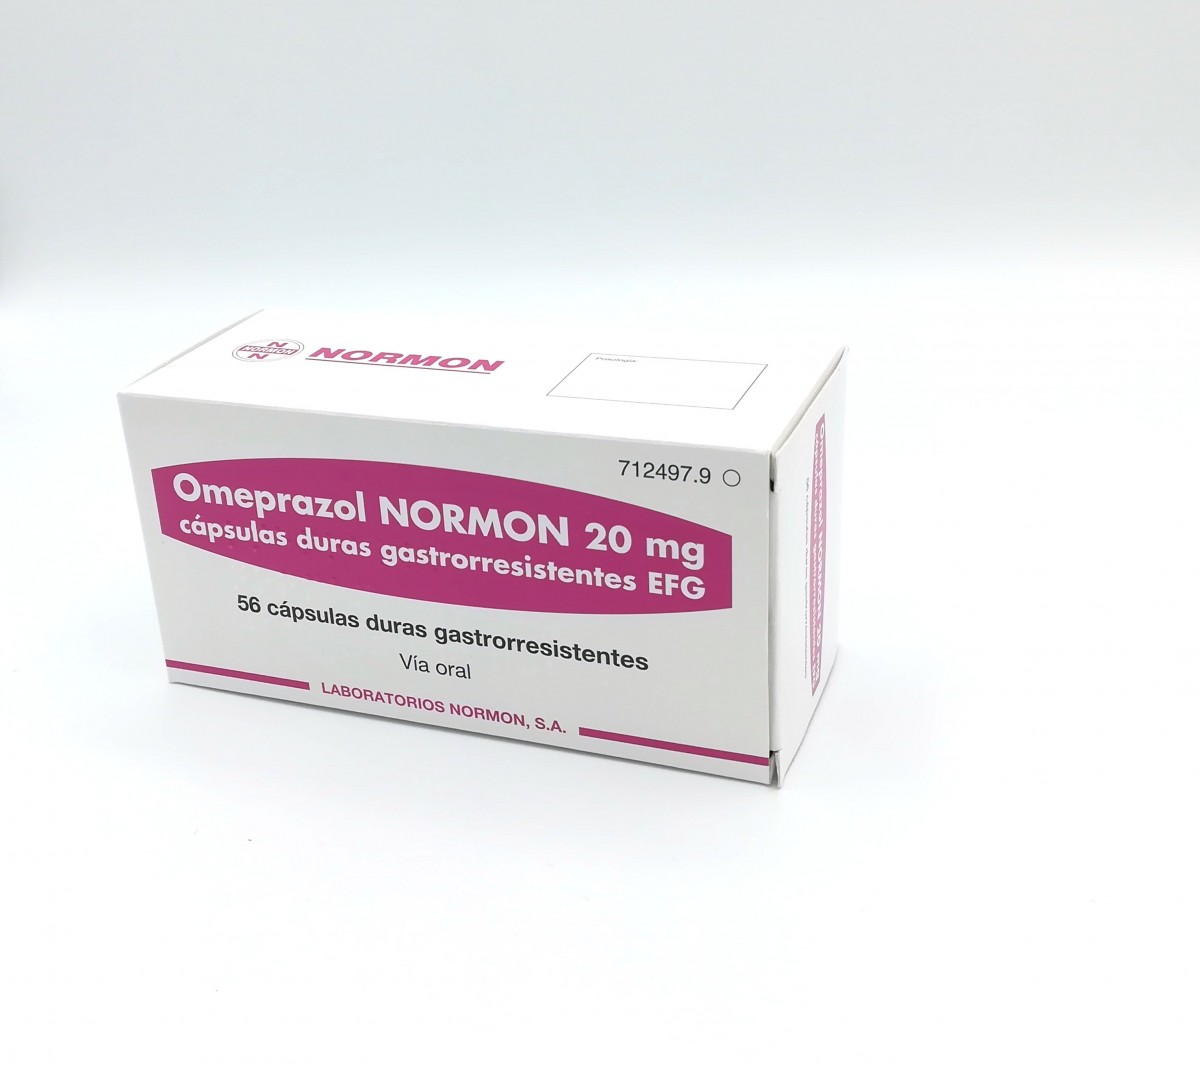 OMEPRAZOL NORMON 20 mg CAPSULAS DURAS GASTRORRESISTENTES EFG , 28 cápsulas fotografía del envase.